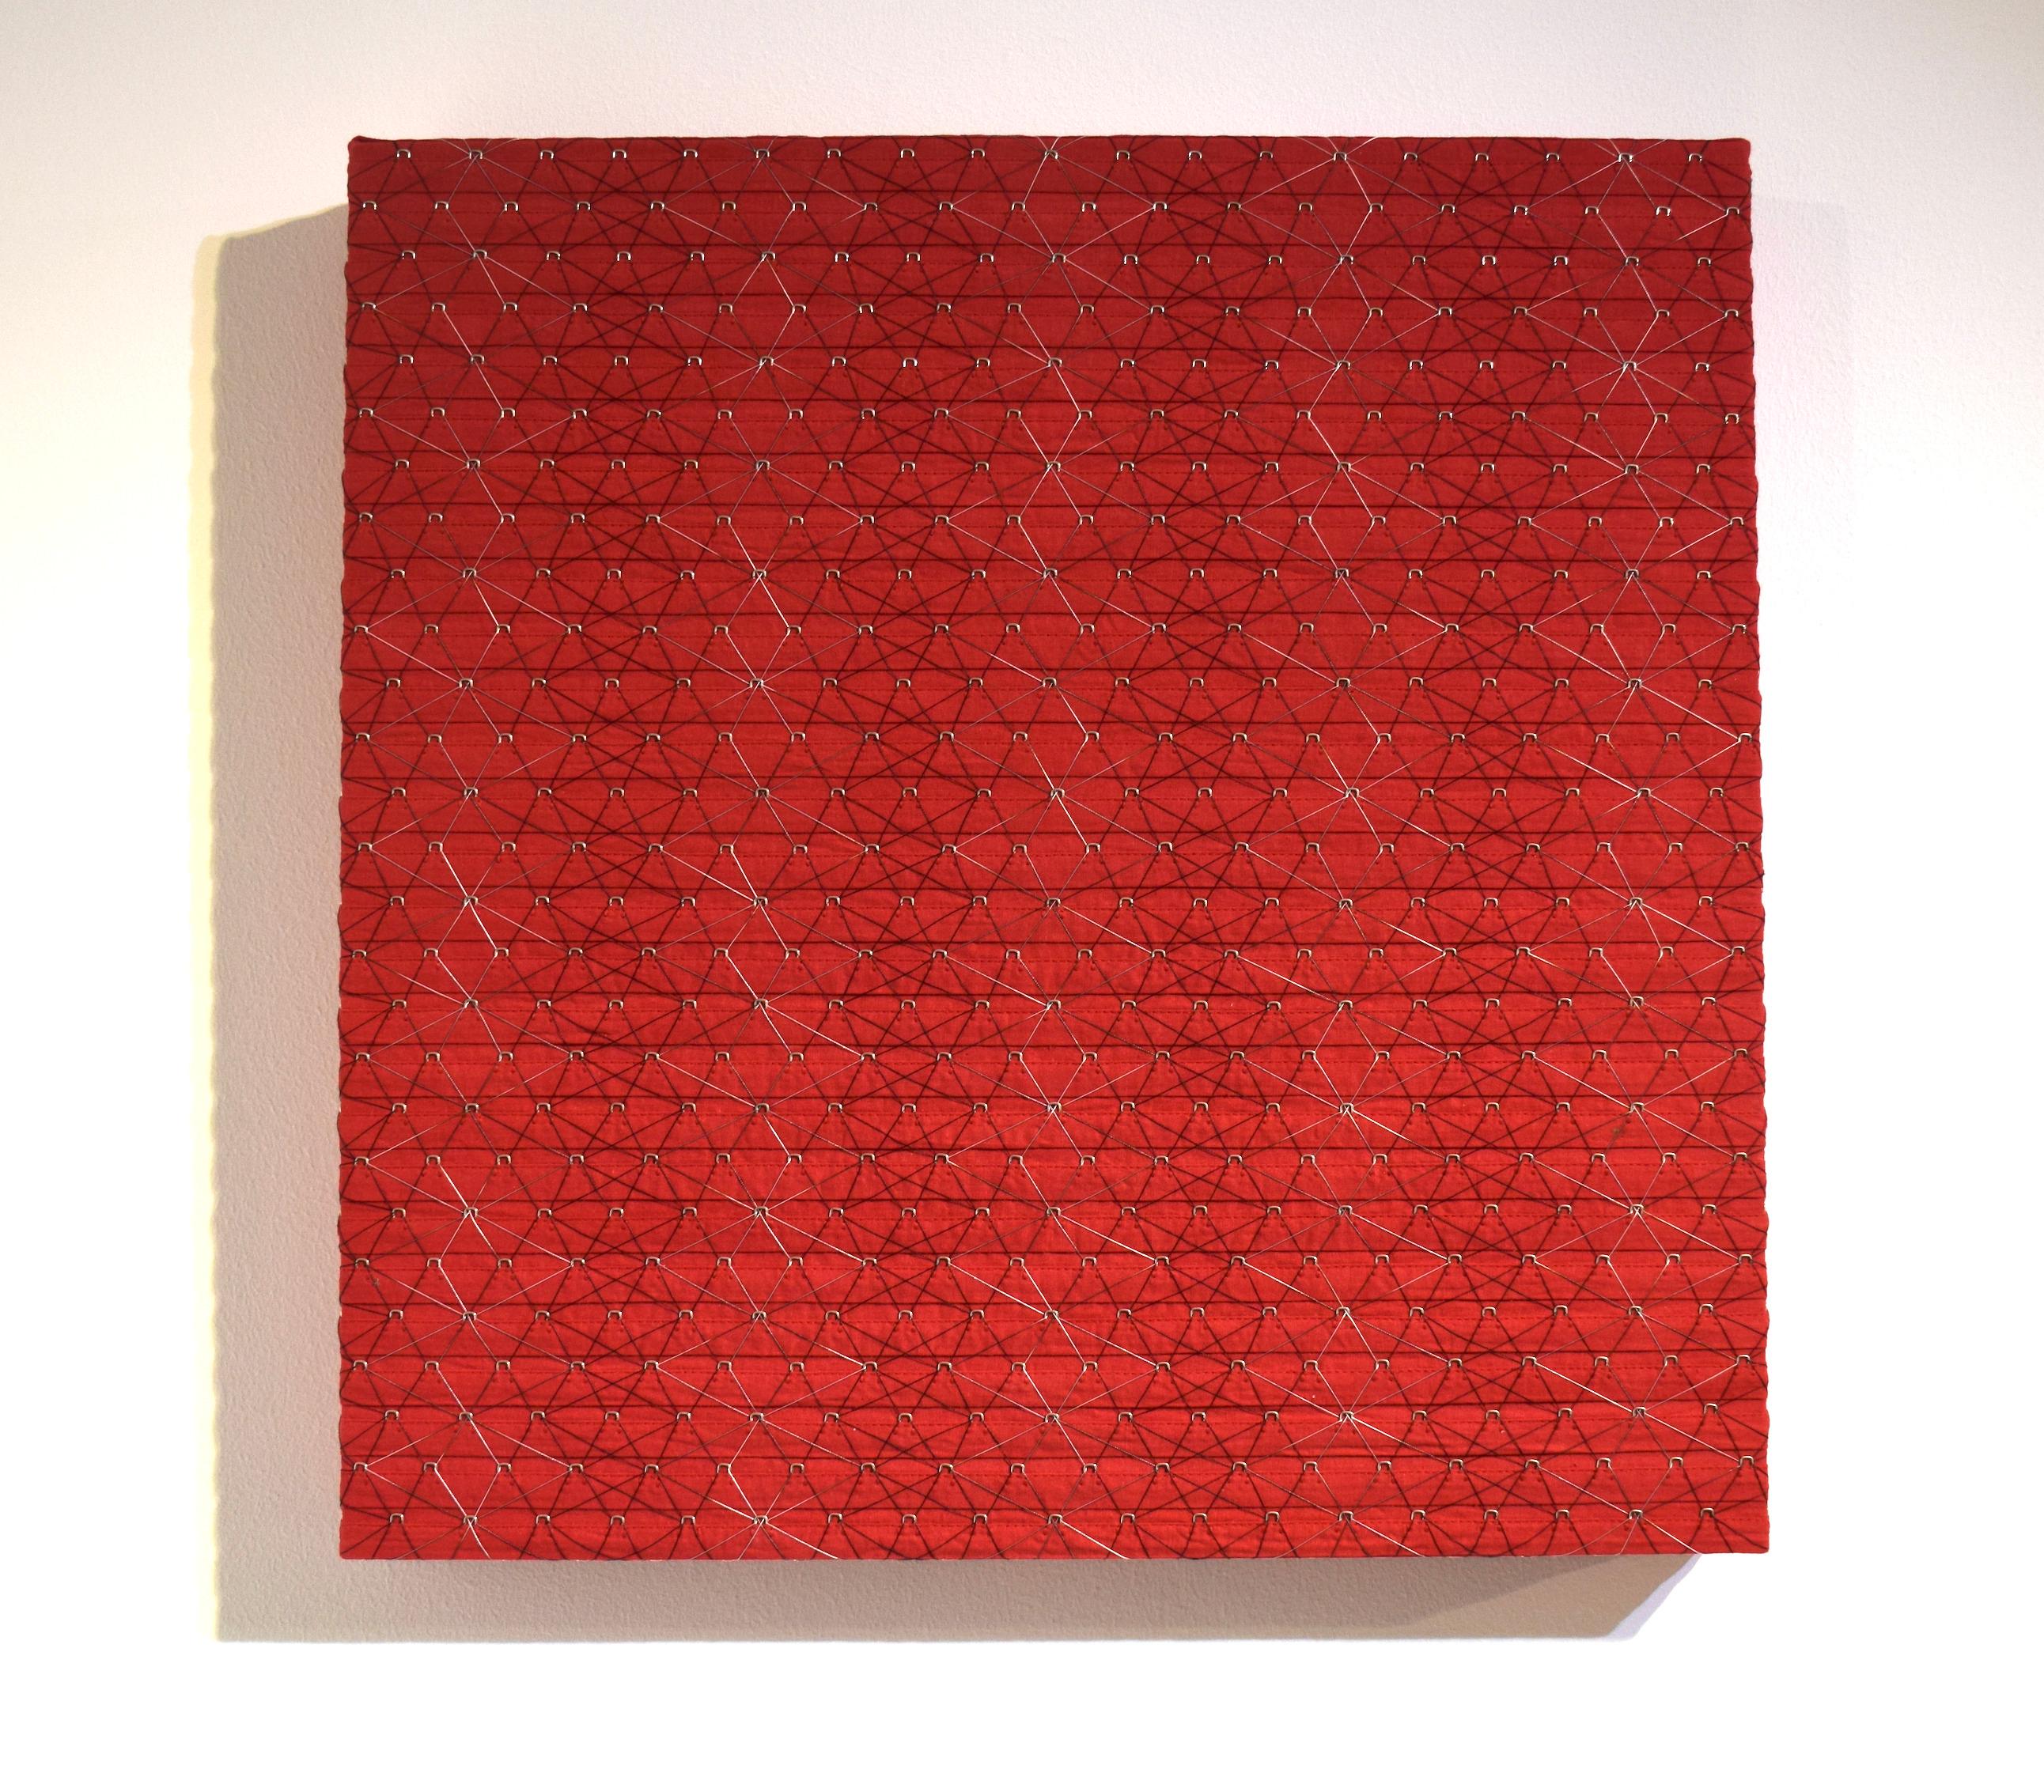 Großes Rotes Quadrat – Sculpture von Denise Yaghmourian